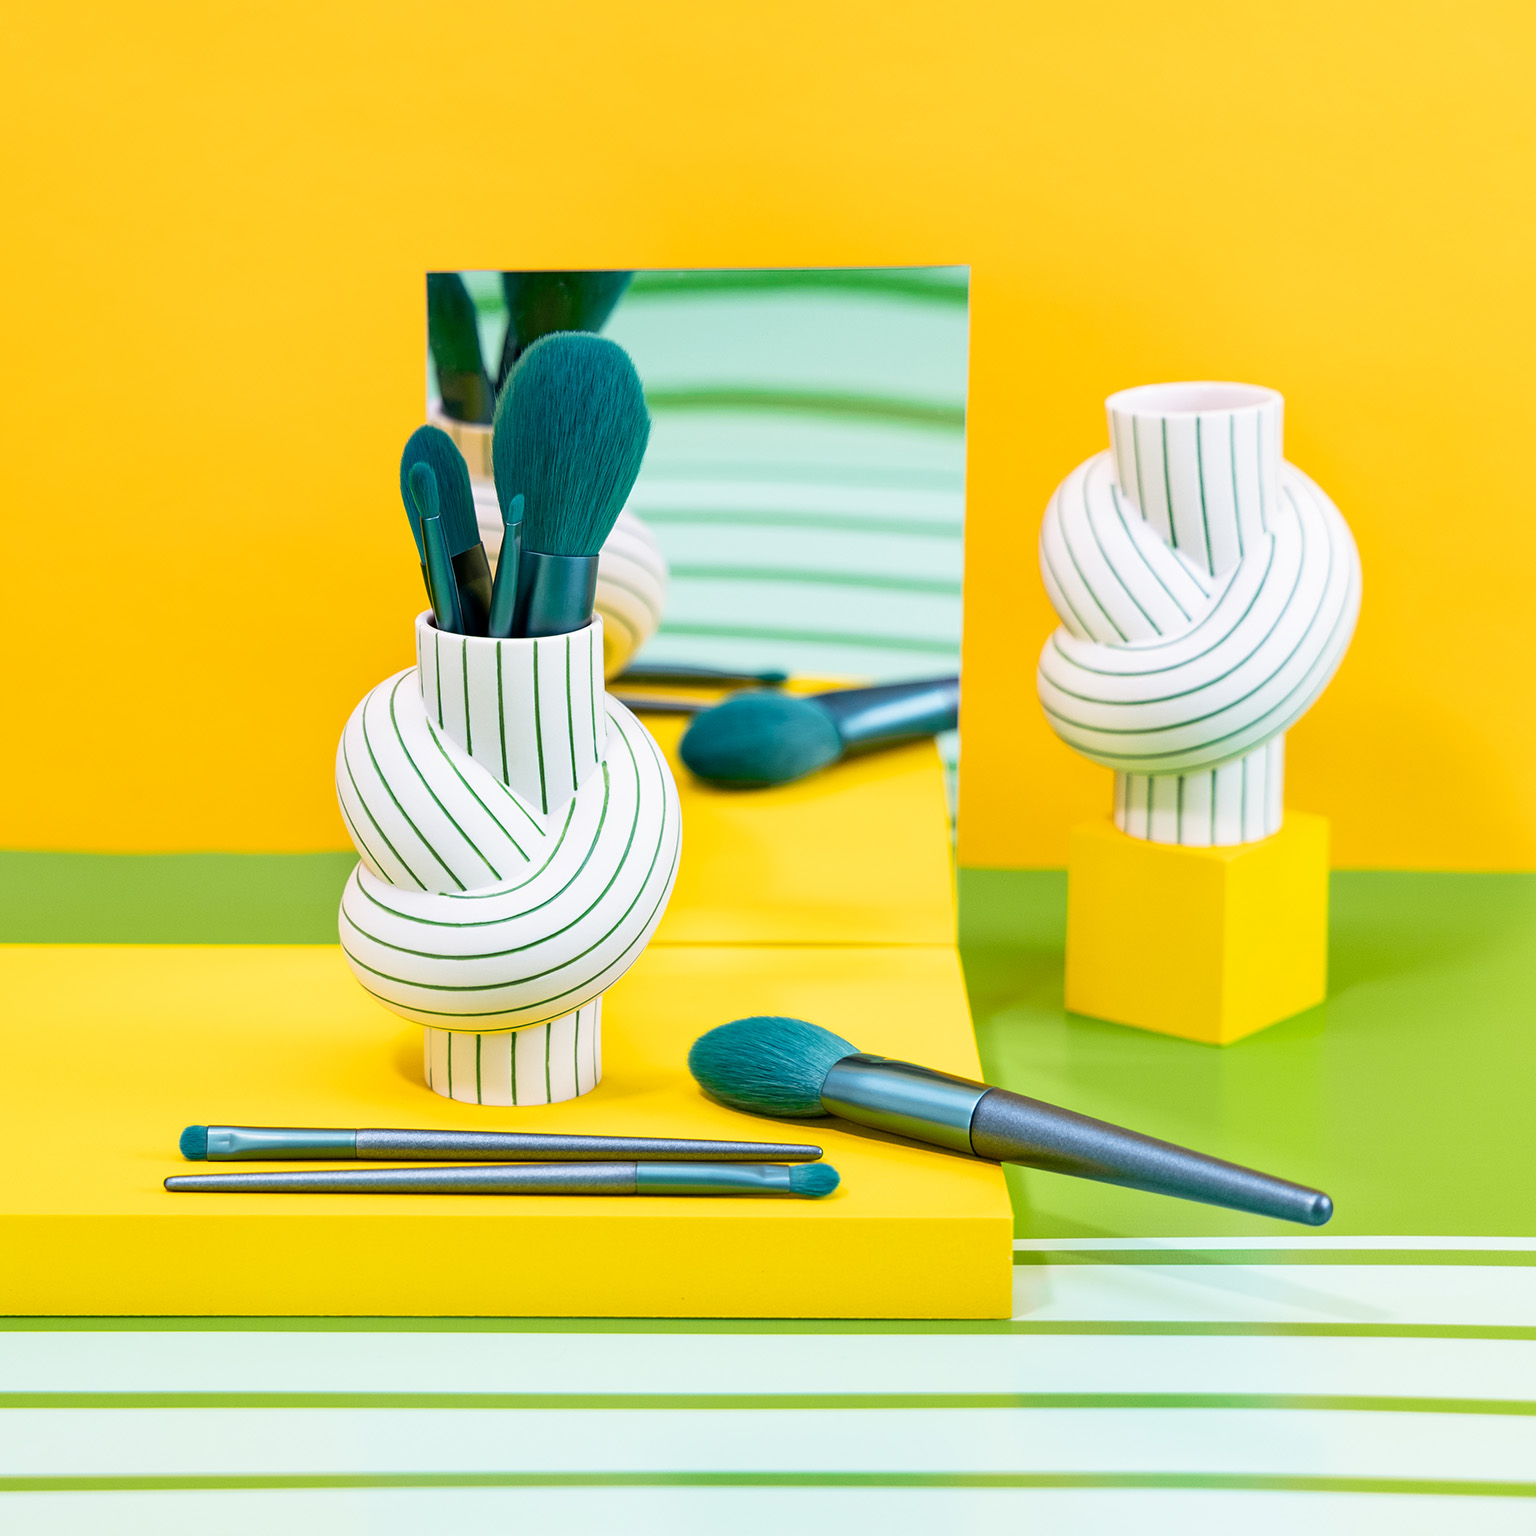 Vaso Node Stripes Apple riempito con pennelli da trucco color petrolio su sfondo giallo a righe bianche e verdi e specchio.